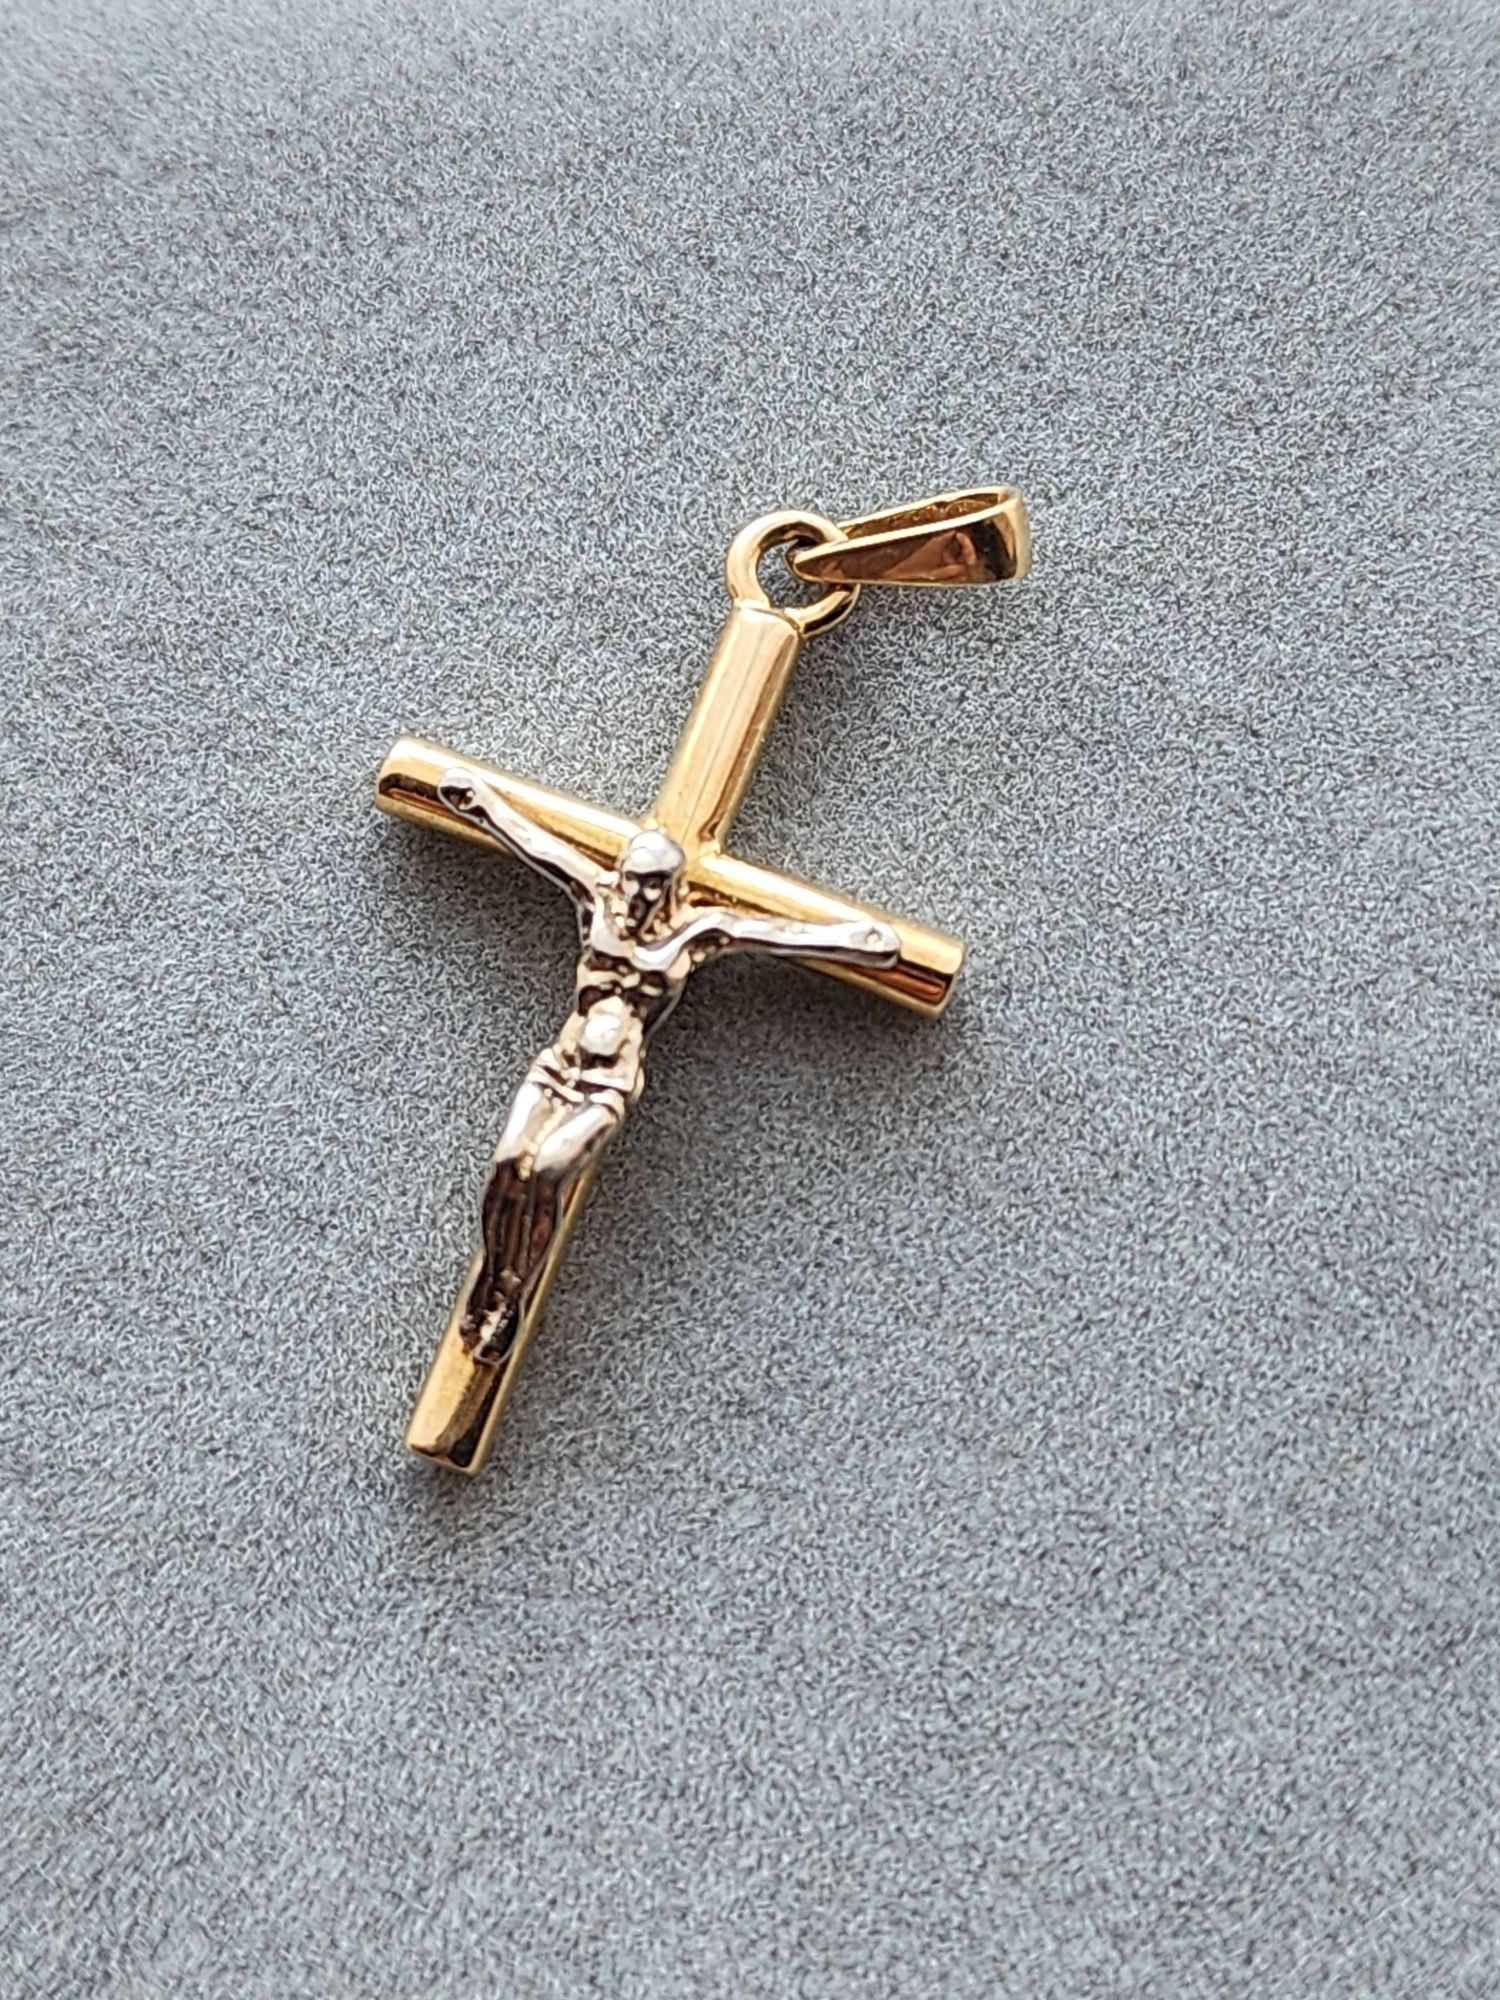 Новый стильный Золотой крестик 585 пр.